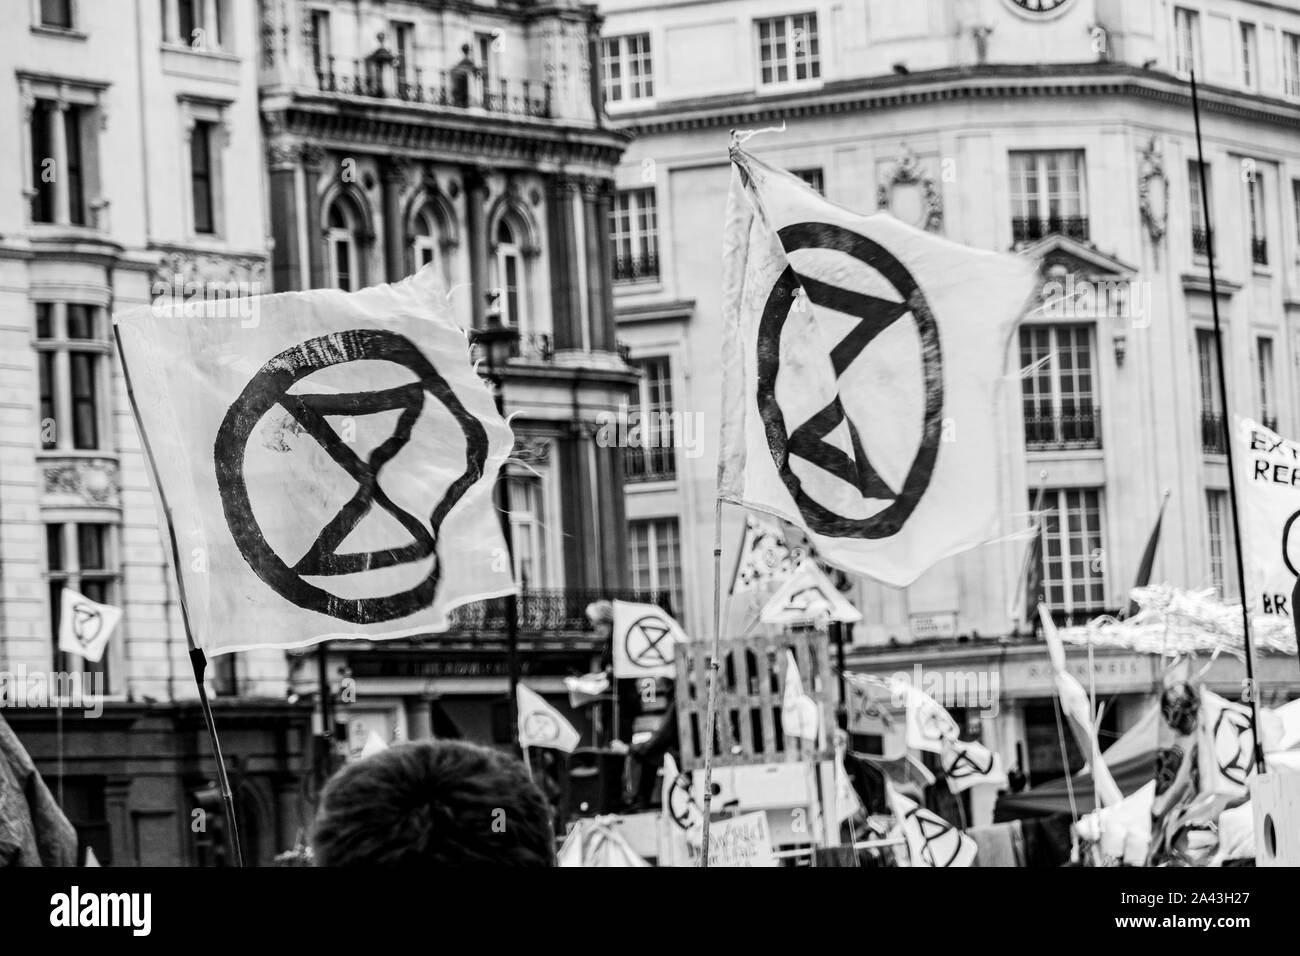 La Rébellion de l'extinction, occupe la place Trafalgar à Londres, demandant au gouvernement d'agir maintenant contre le changement climatique Banque D'Images